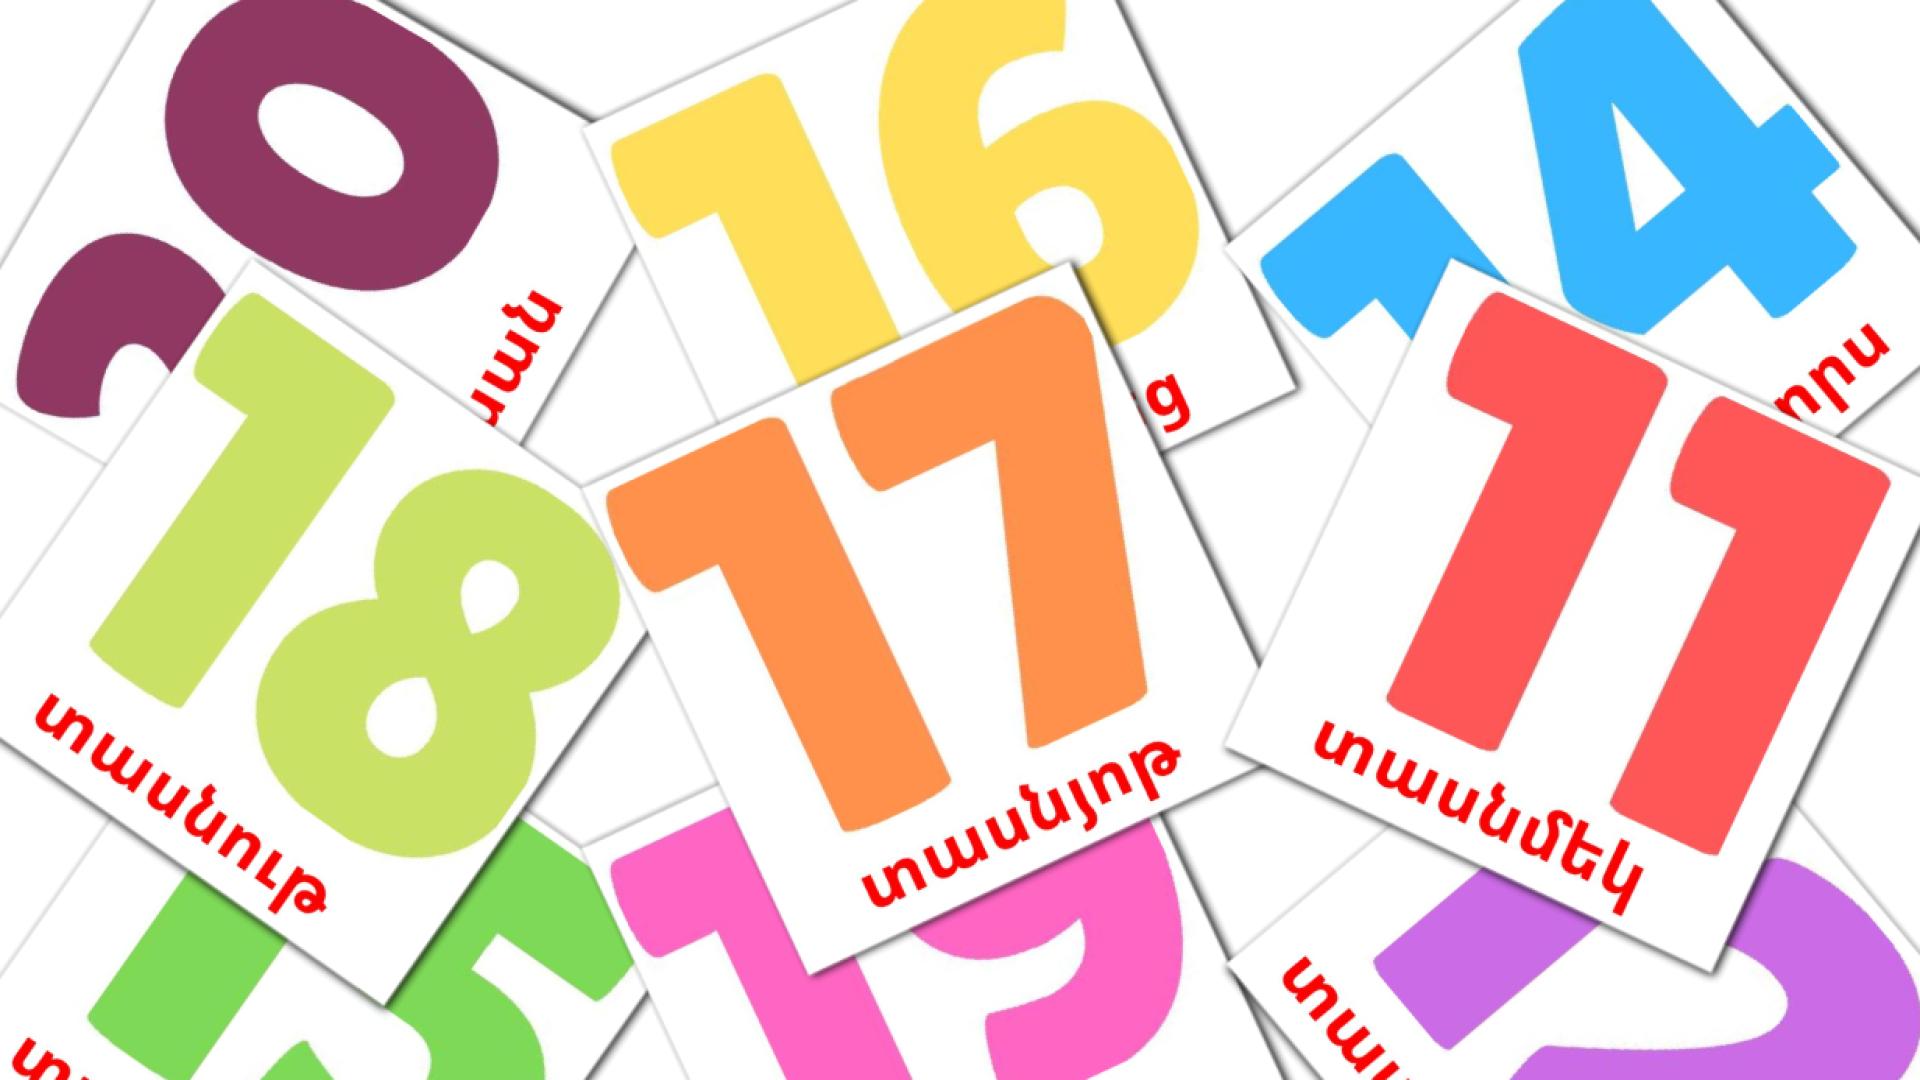 armenio tarjetas de vocabulario en math